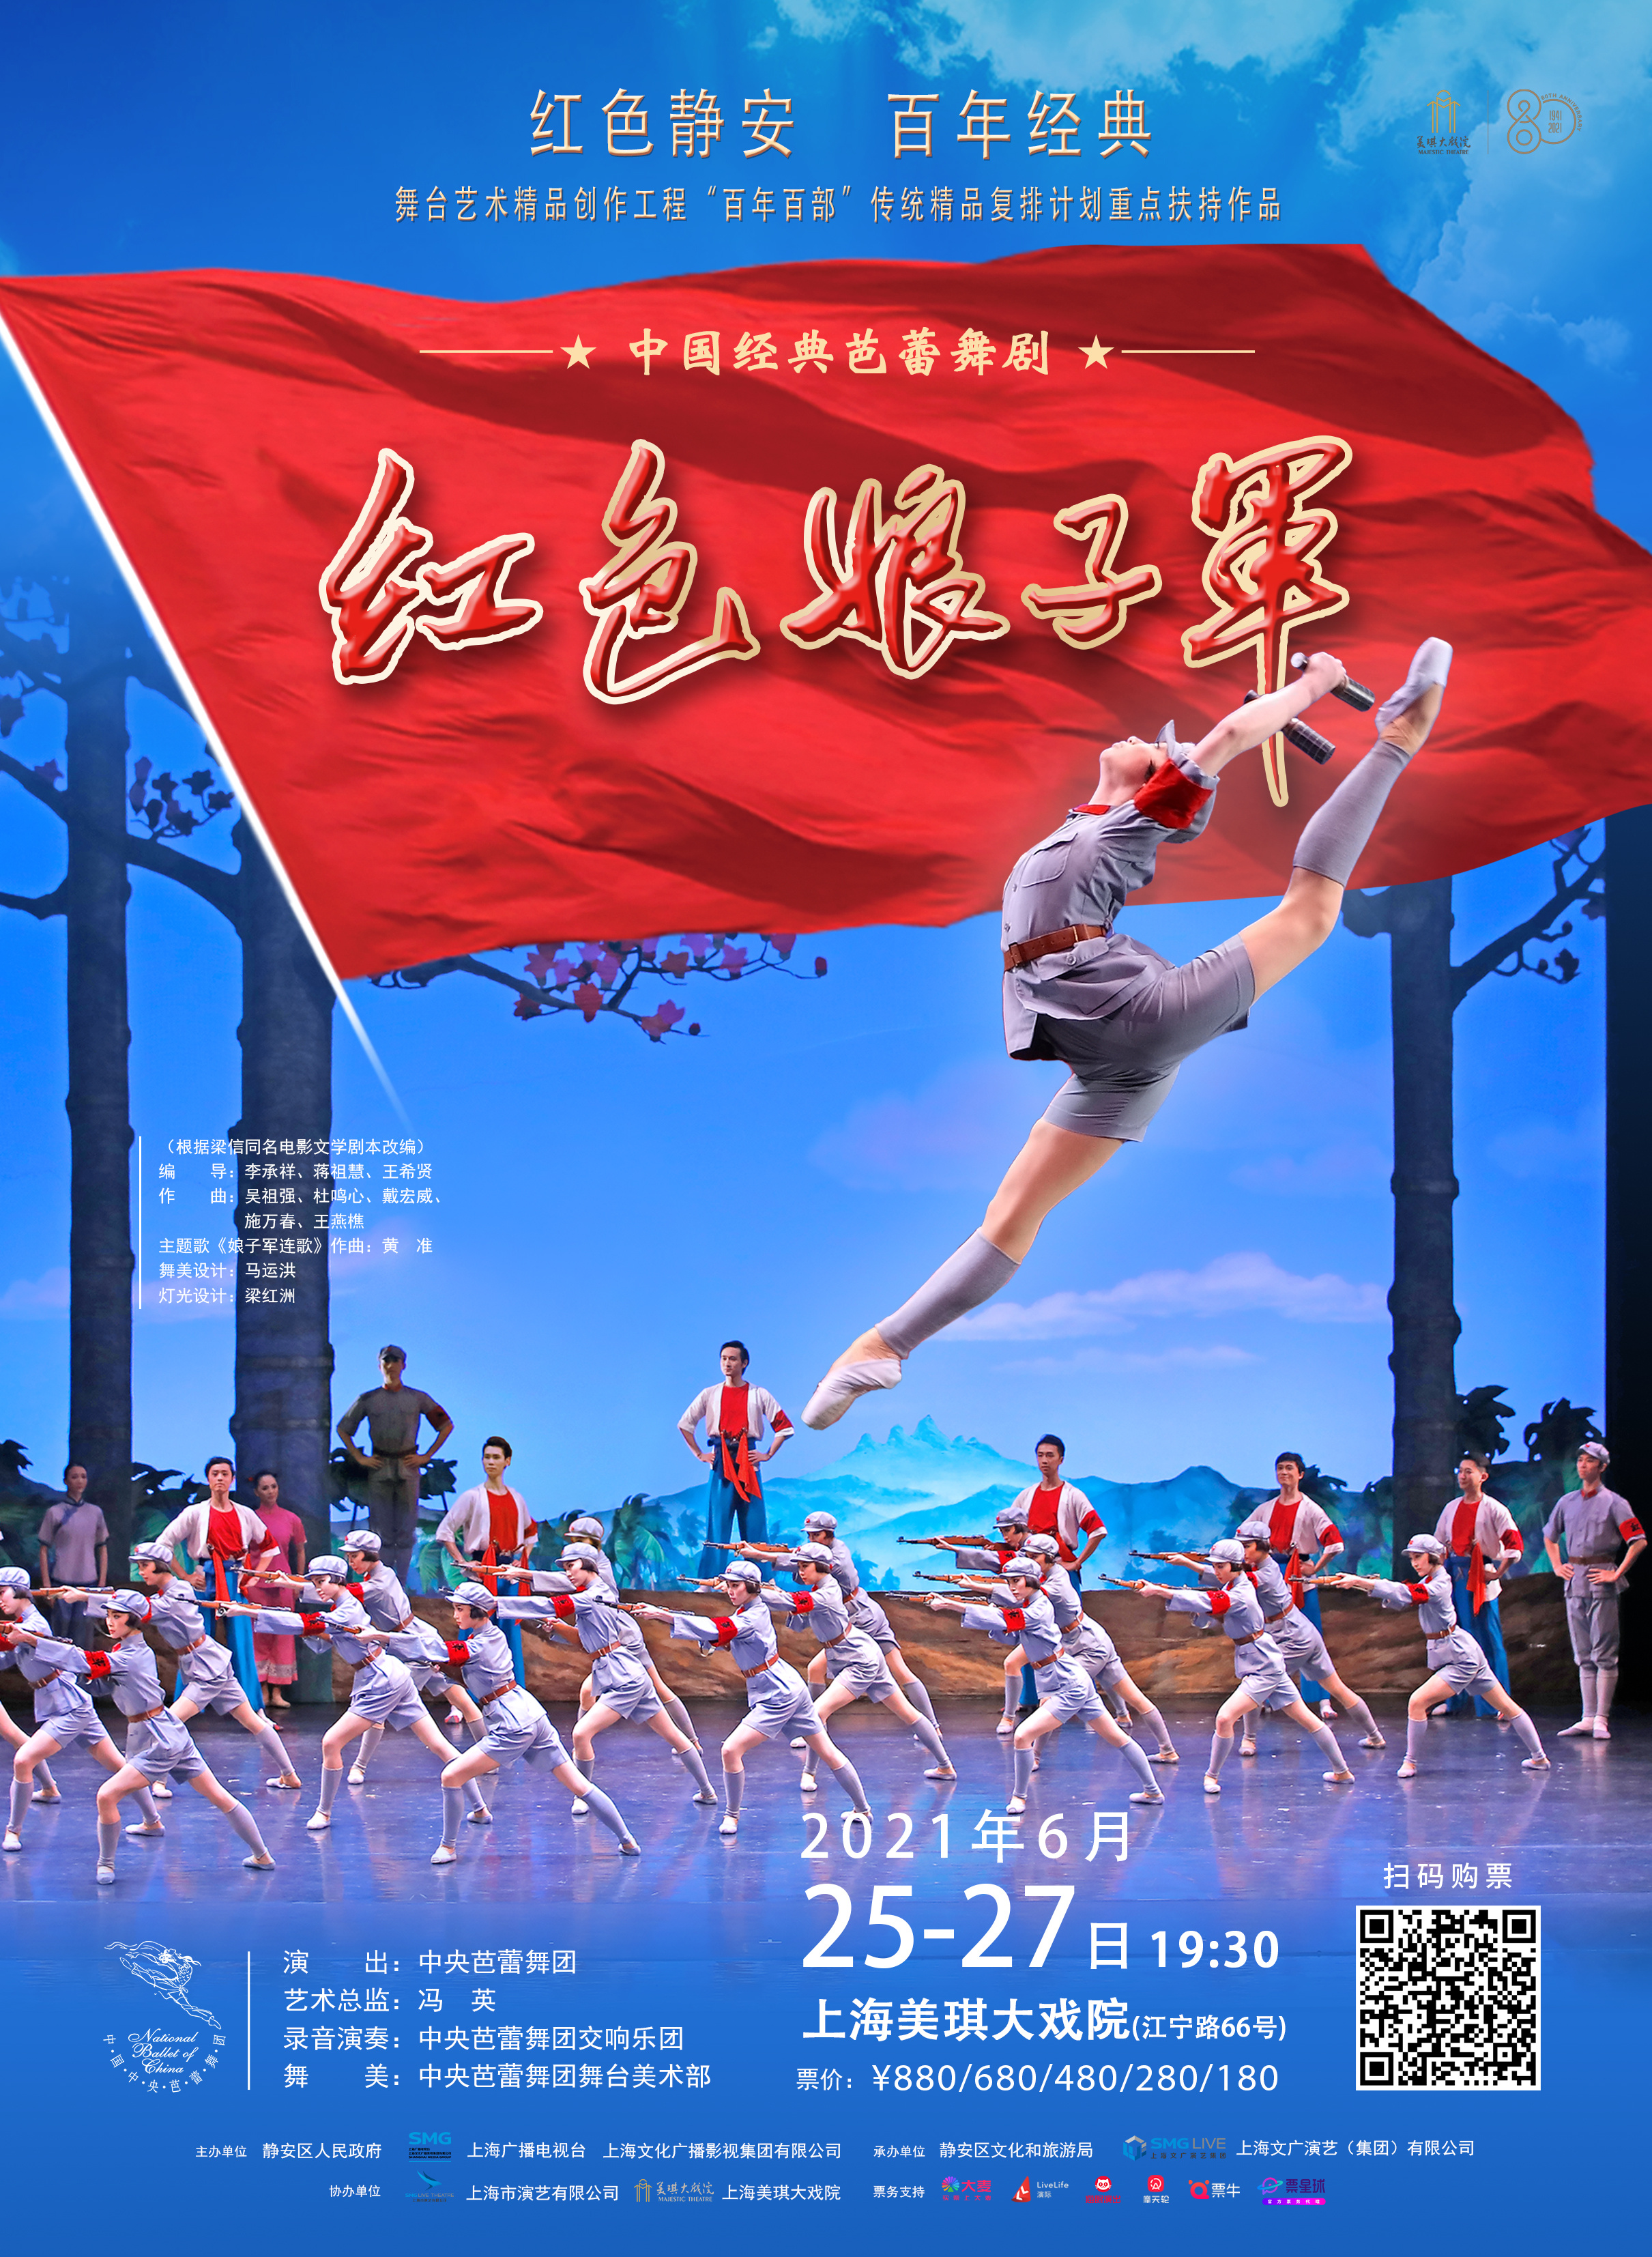 视频丨经典芭蕾舞剧《红色娘子军》将于6月25日首次在静安演出